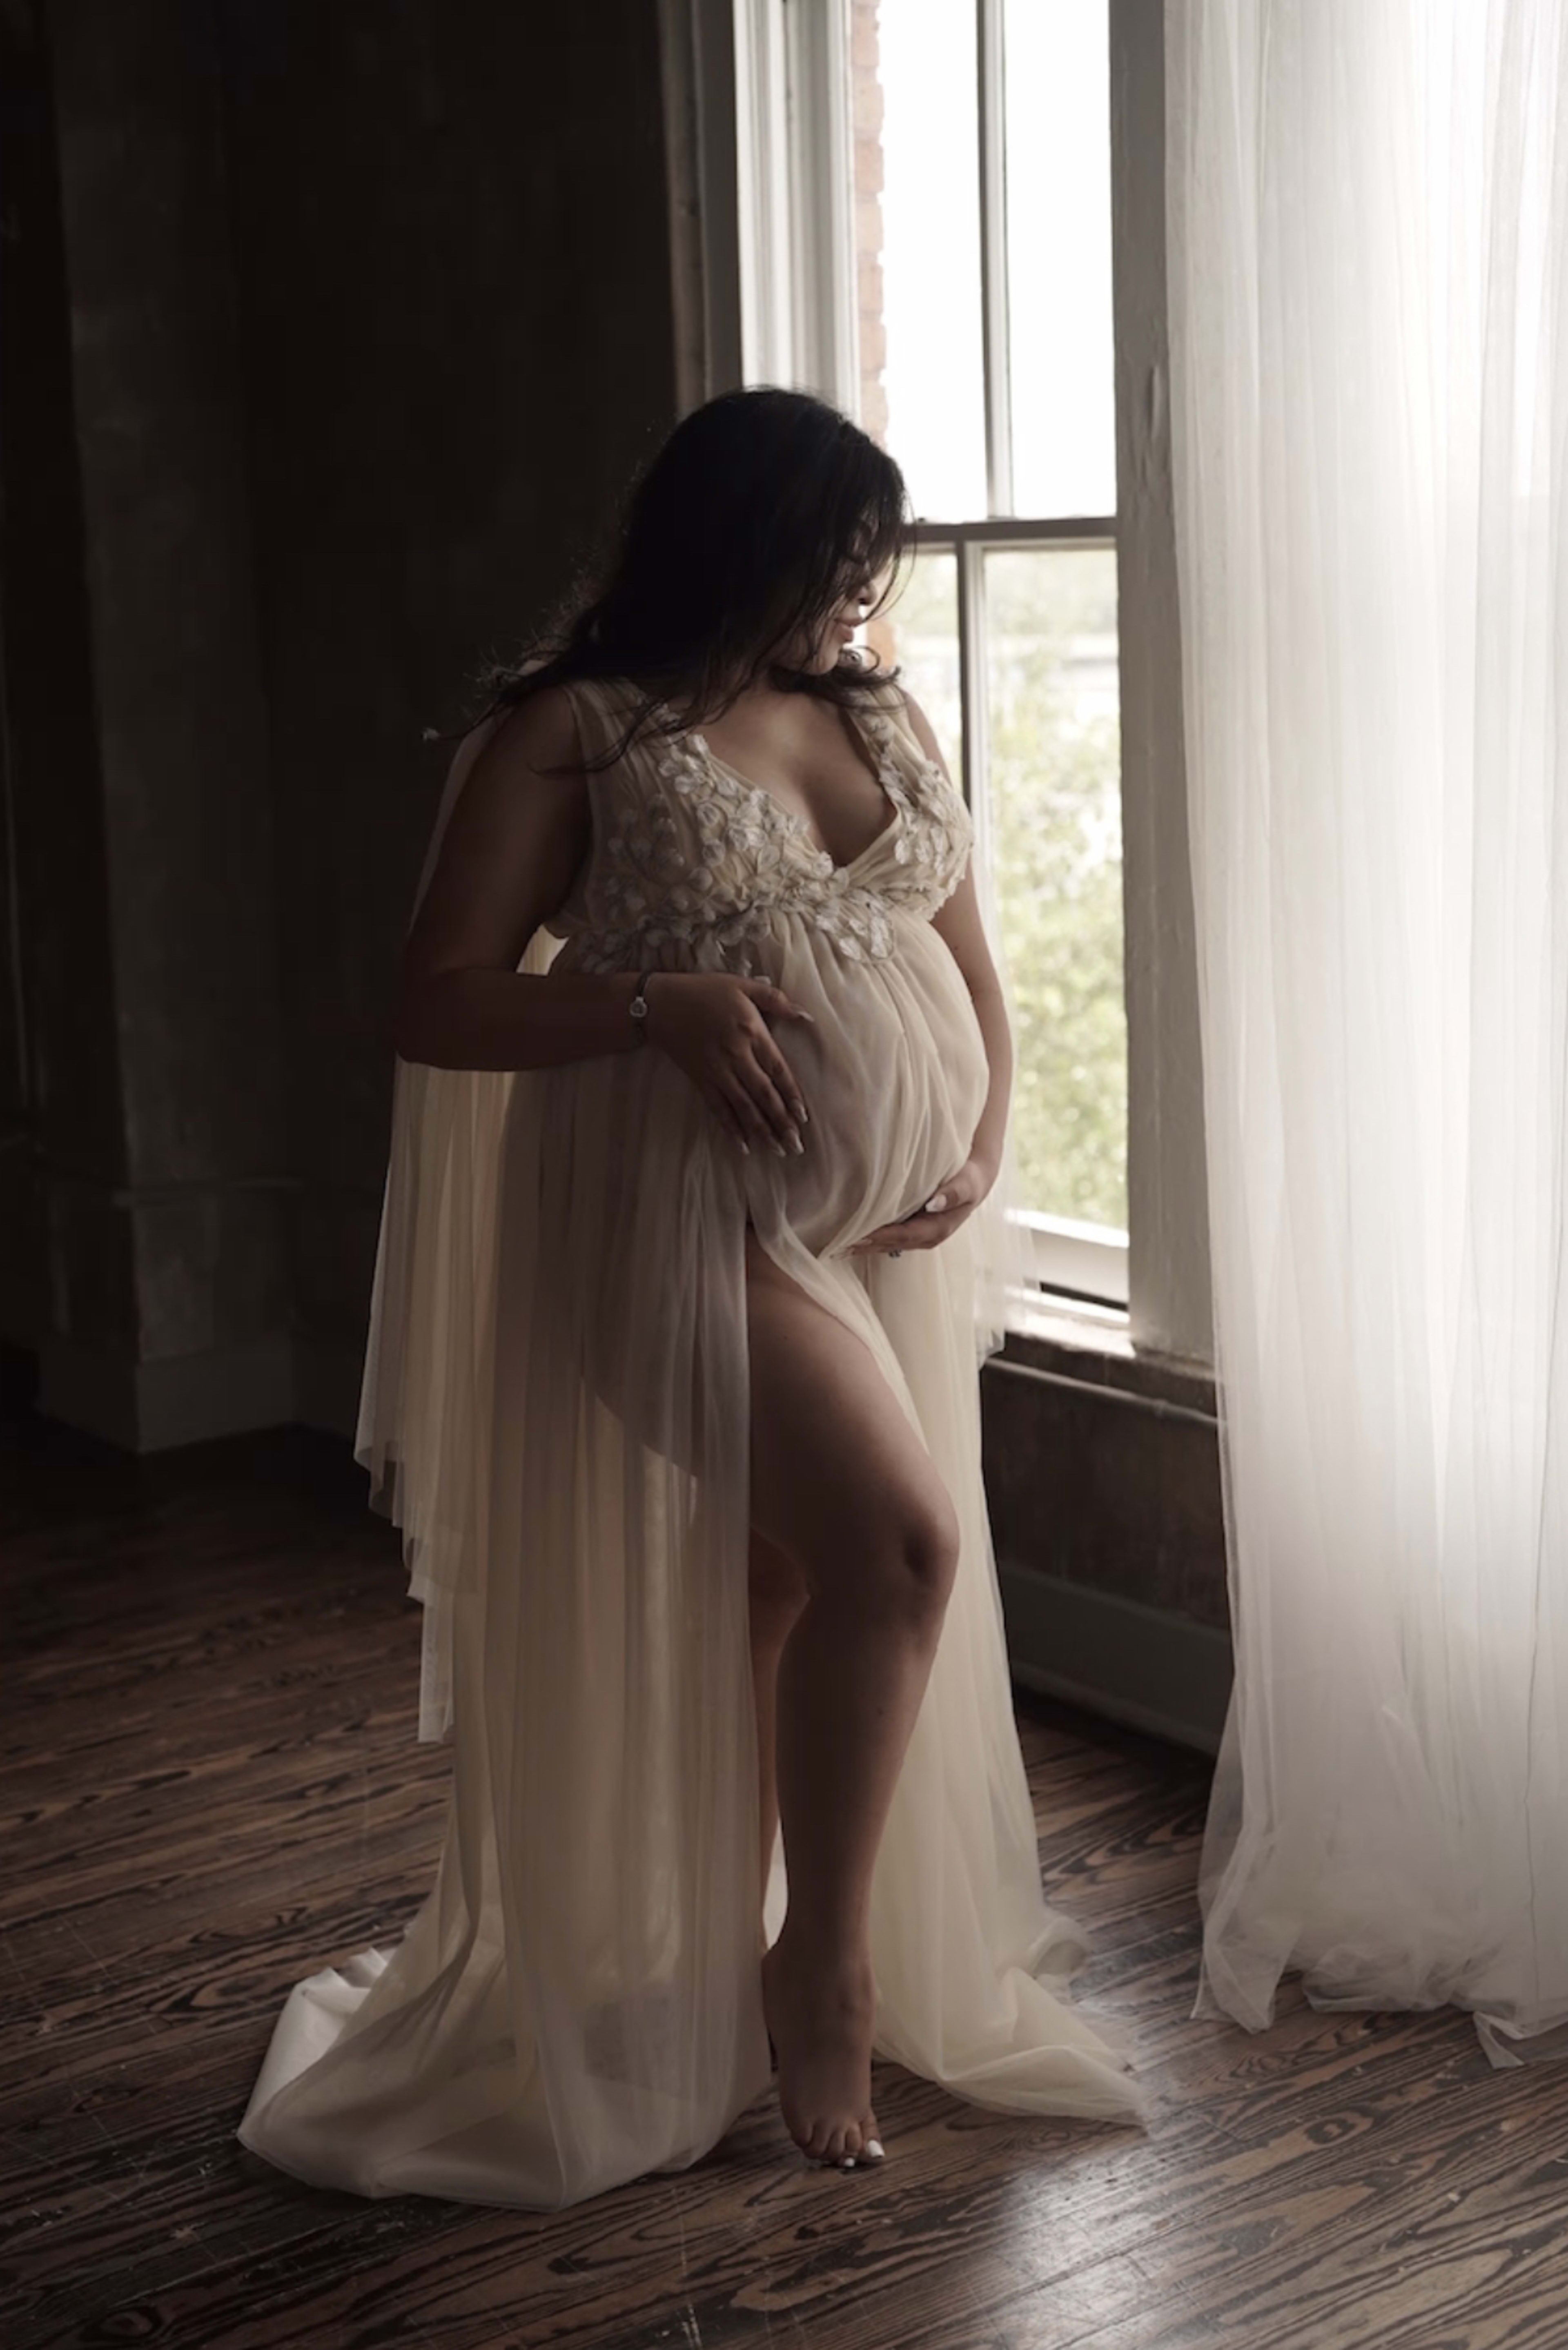 Un shooting photo de maternité d'une femme en robe blanche debout devant une fenêtre.